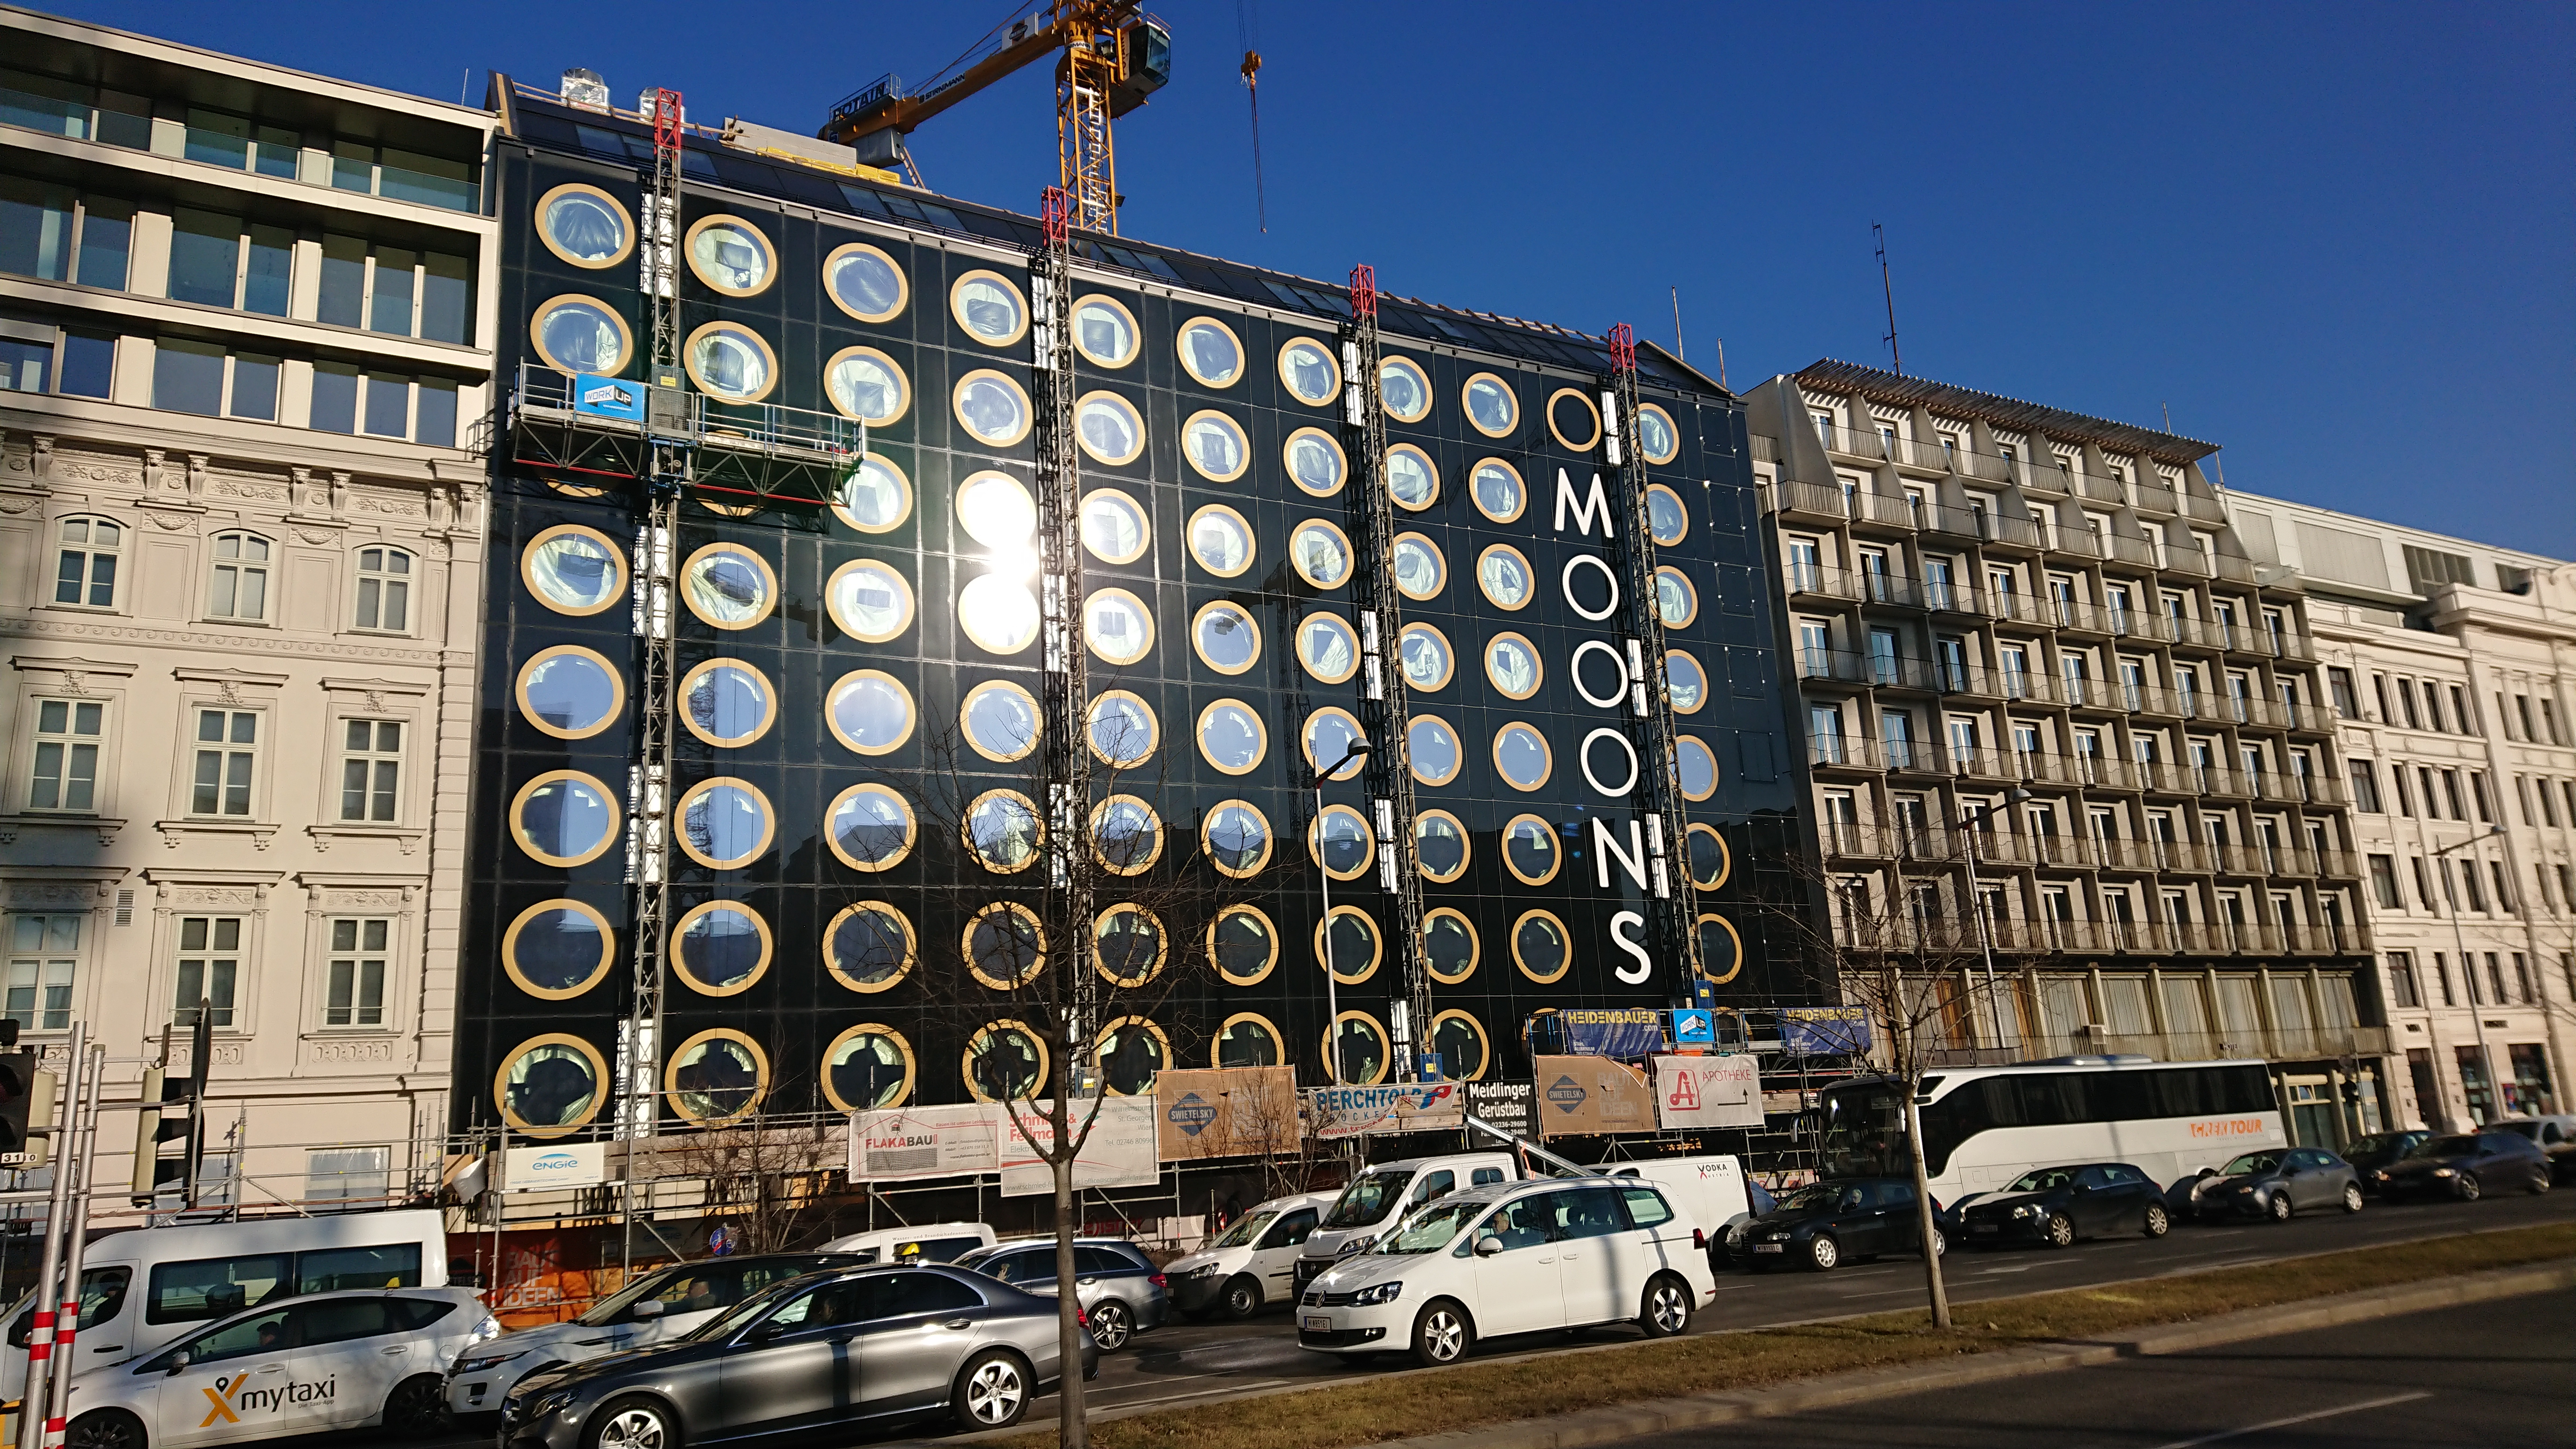 Hotelgebäude, Mooons, Wien - Building construction